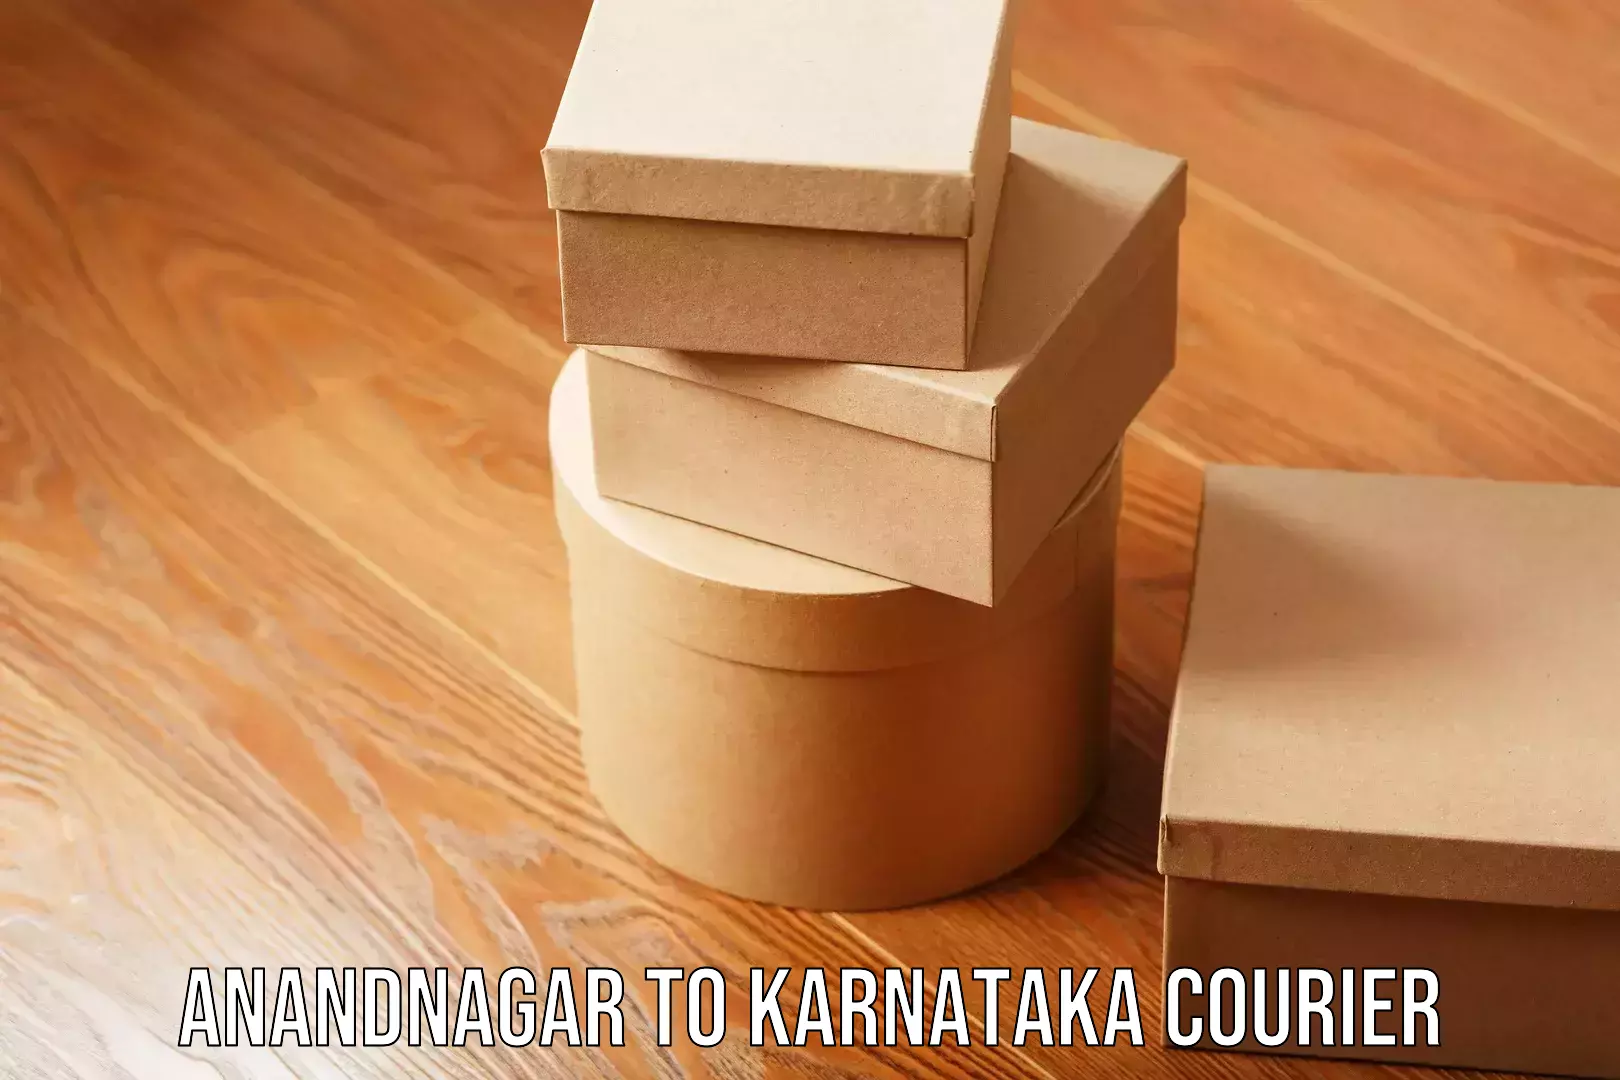 Reliable shipping solutions Anandnagar to Karnataka